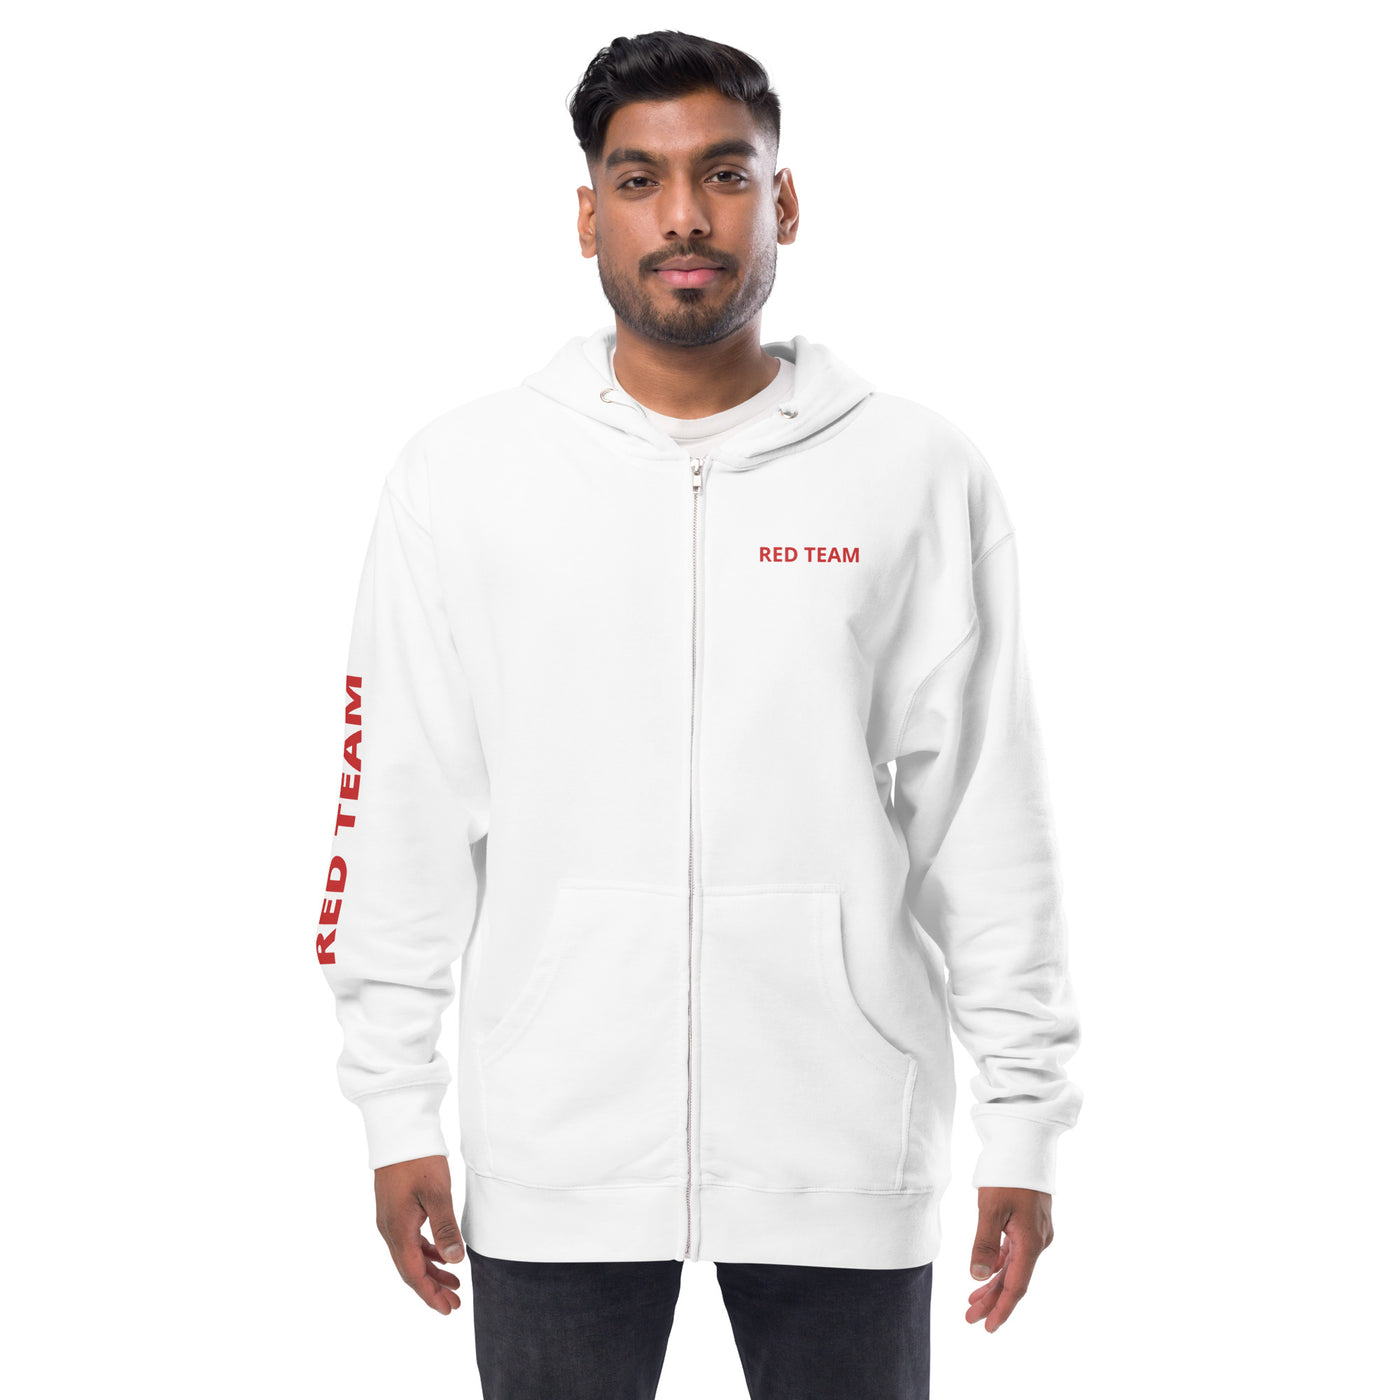 Cyber Security Red Team - Unisex fleece zip up hoodie